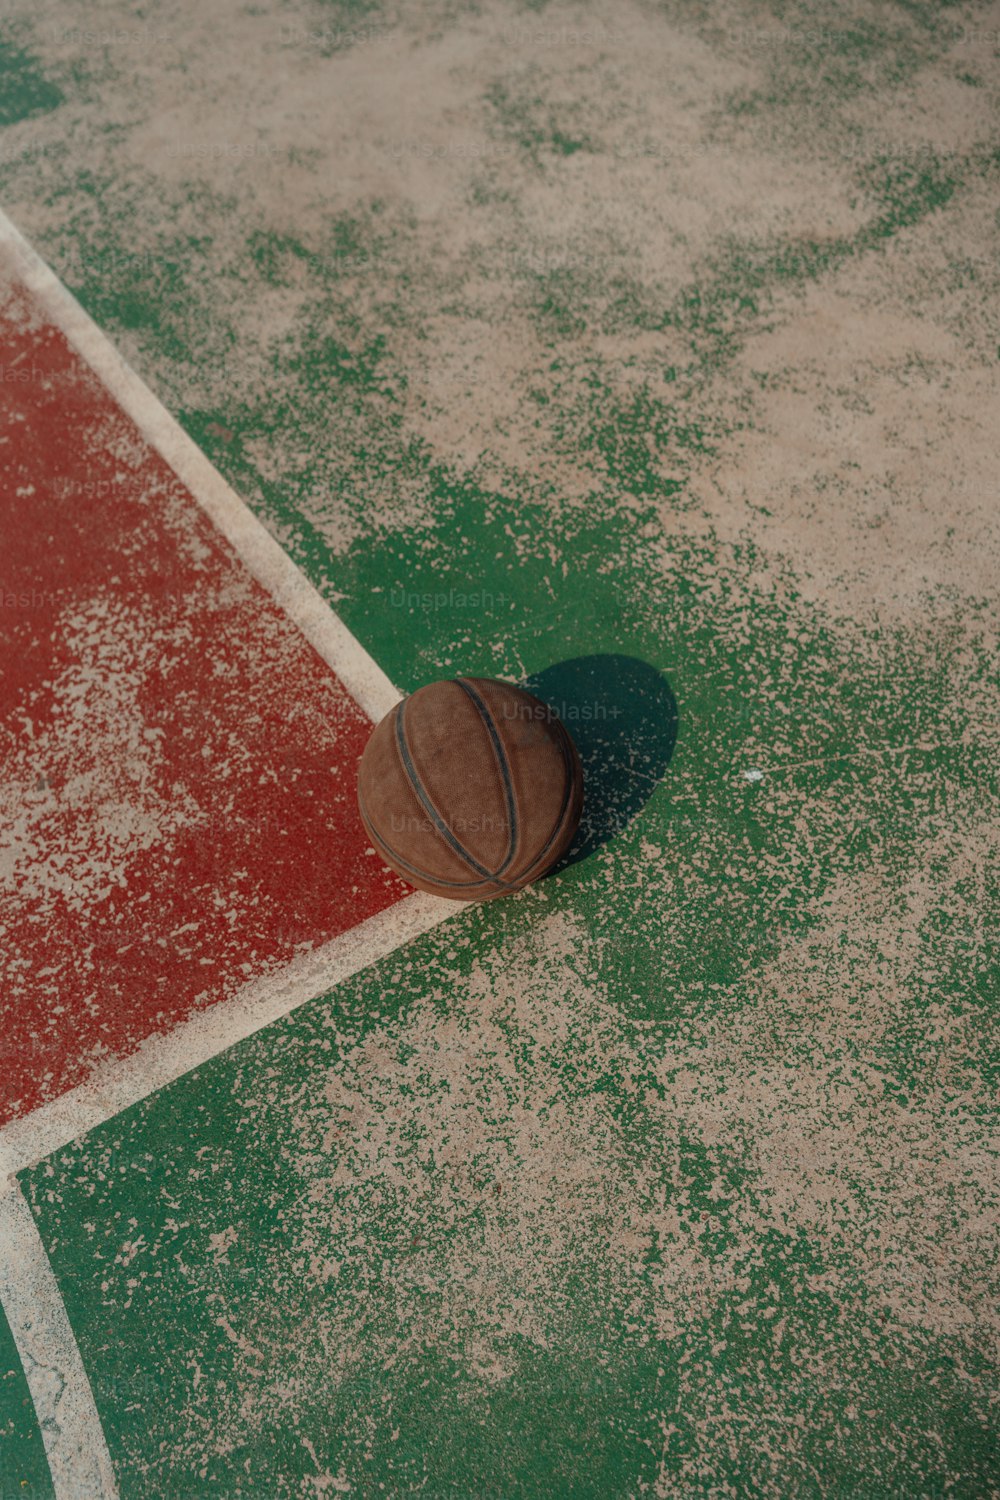 Una pelota de baloncesto tendida en el suelo de una cancha de baloncesto